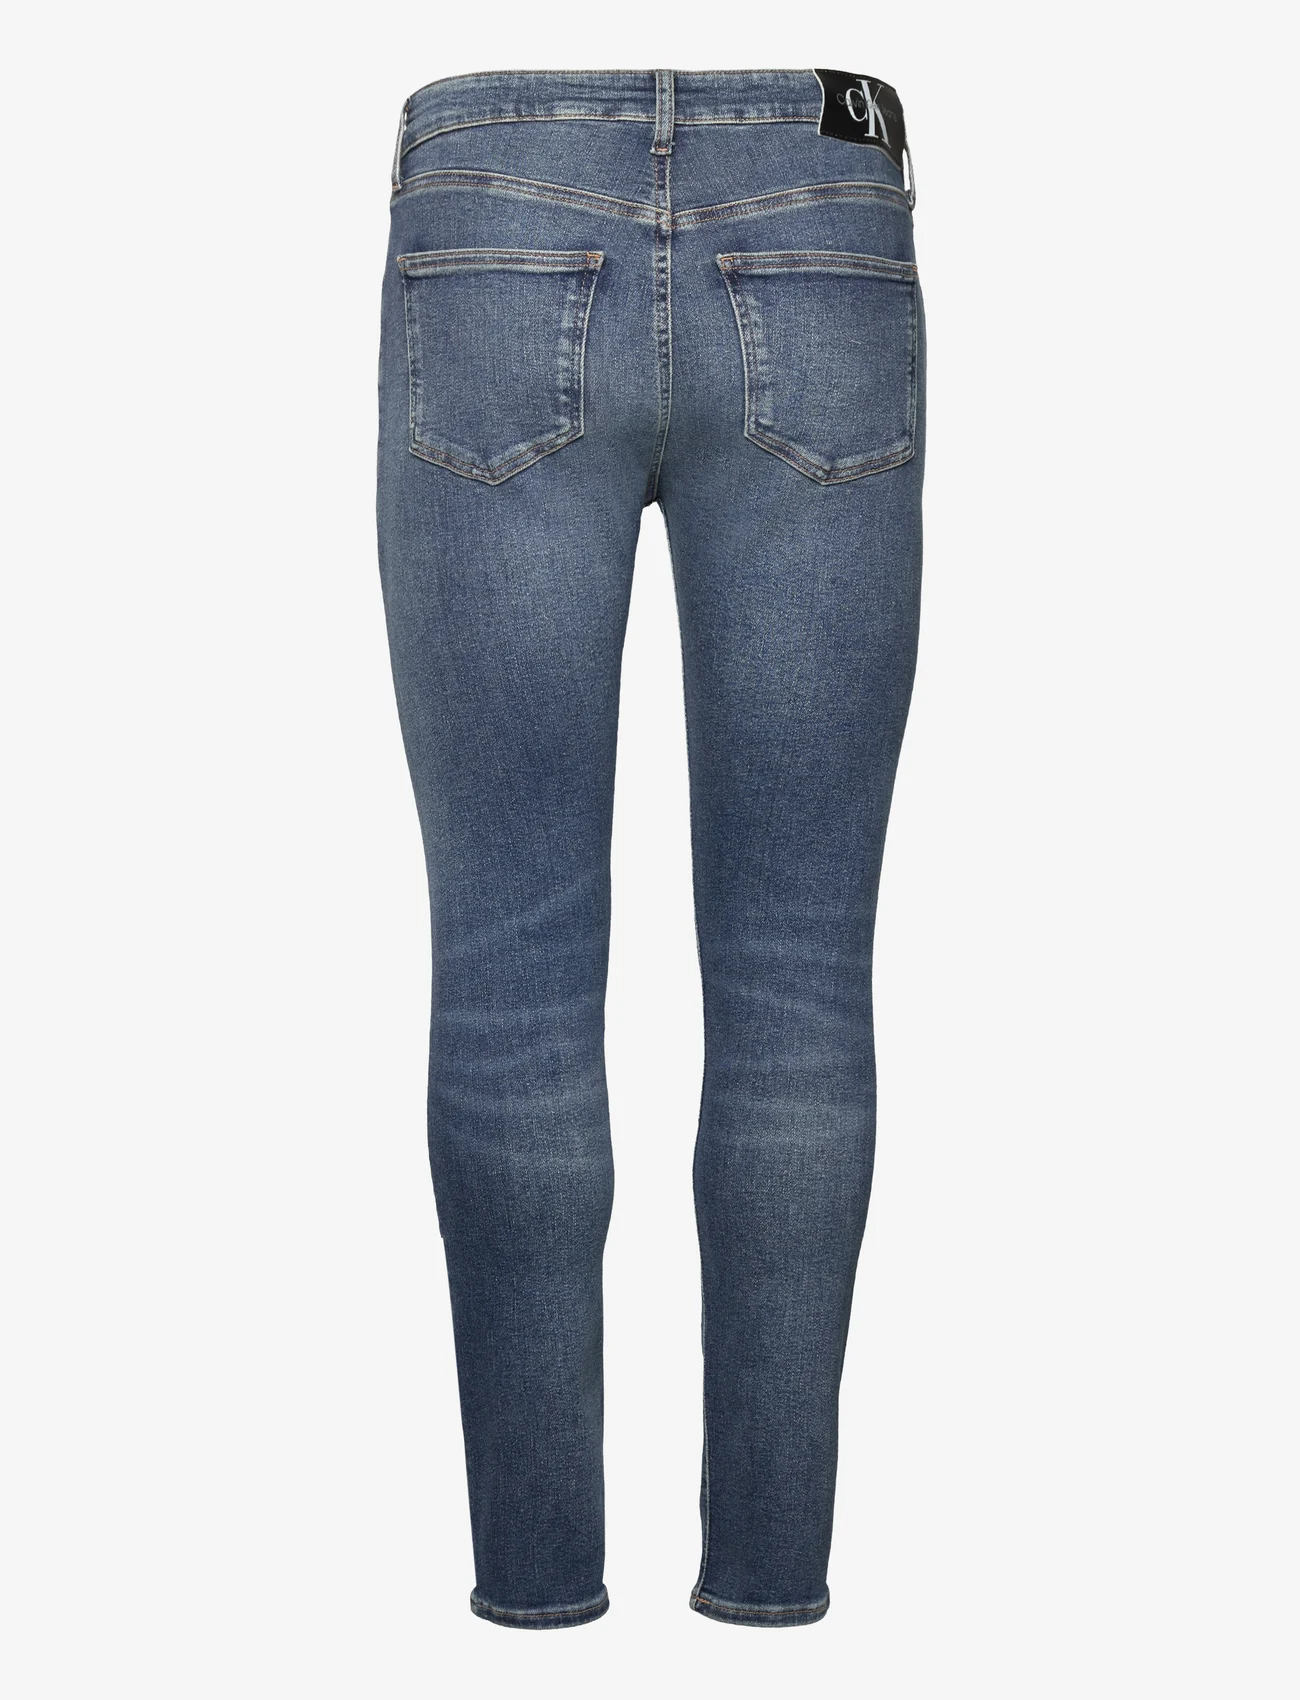 Calvin Klein Jeans - SKINNY - skinny jeans - denim dark - 1